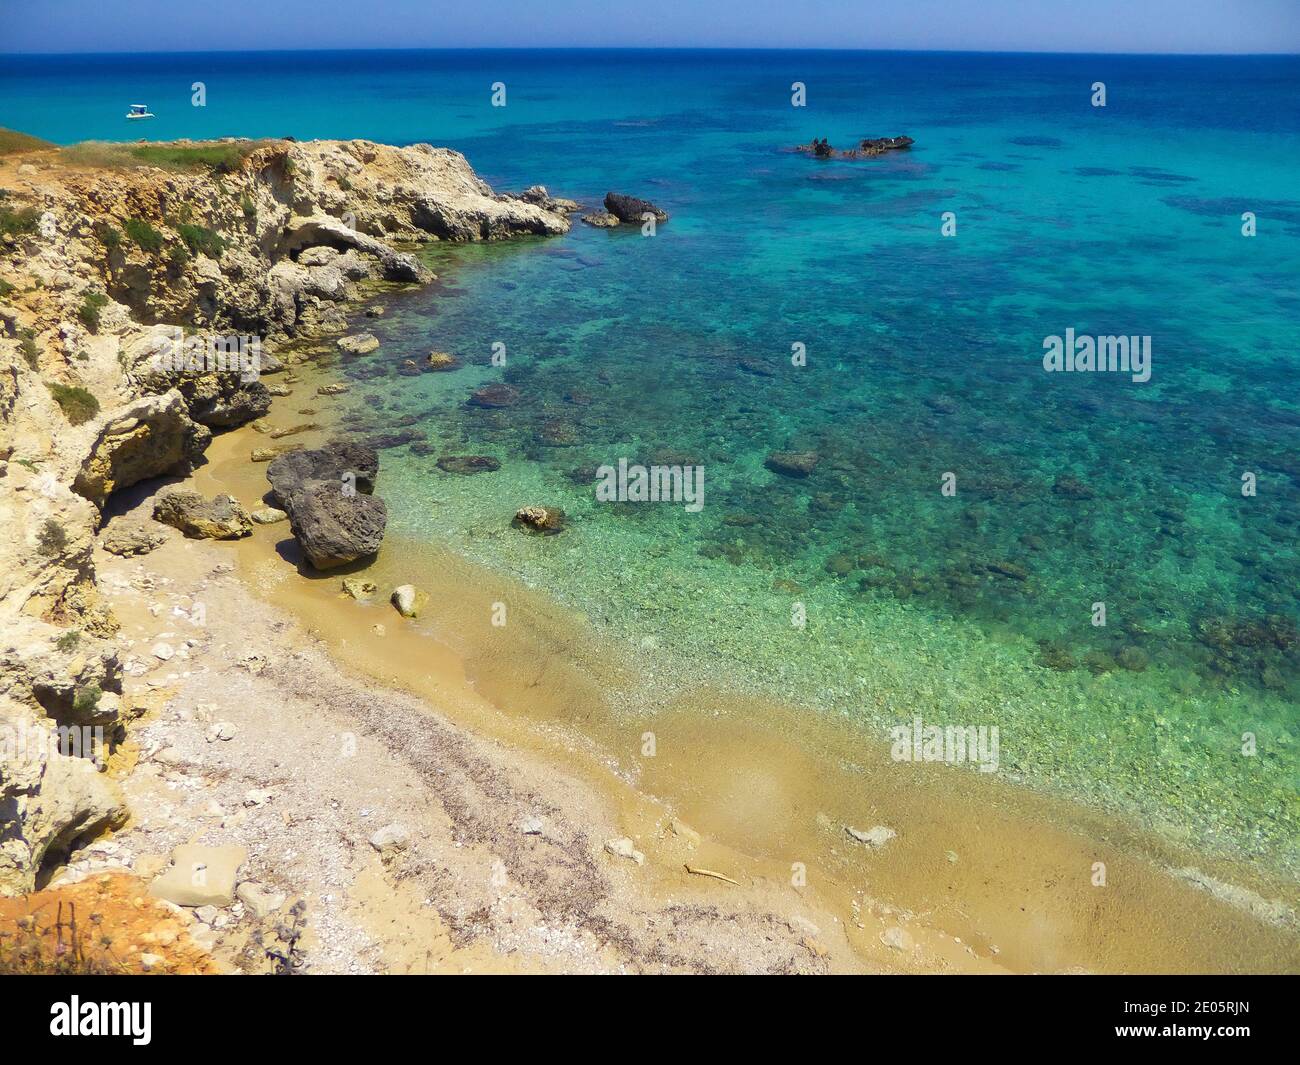 Italy Apulia Salento Coast between Otranto and Porto Badisco Stock Photo